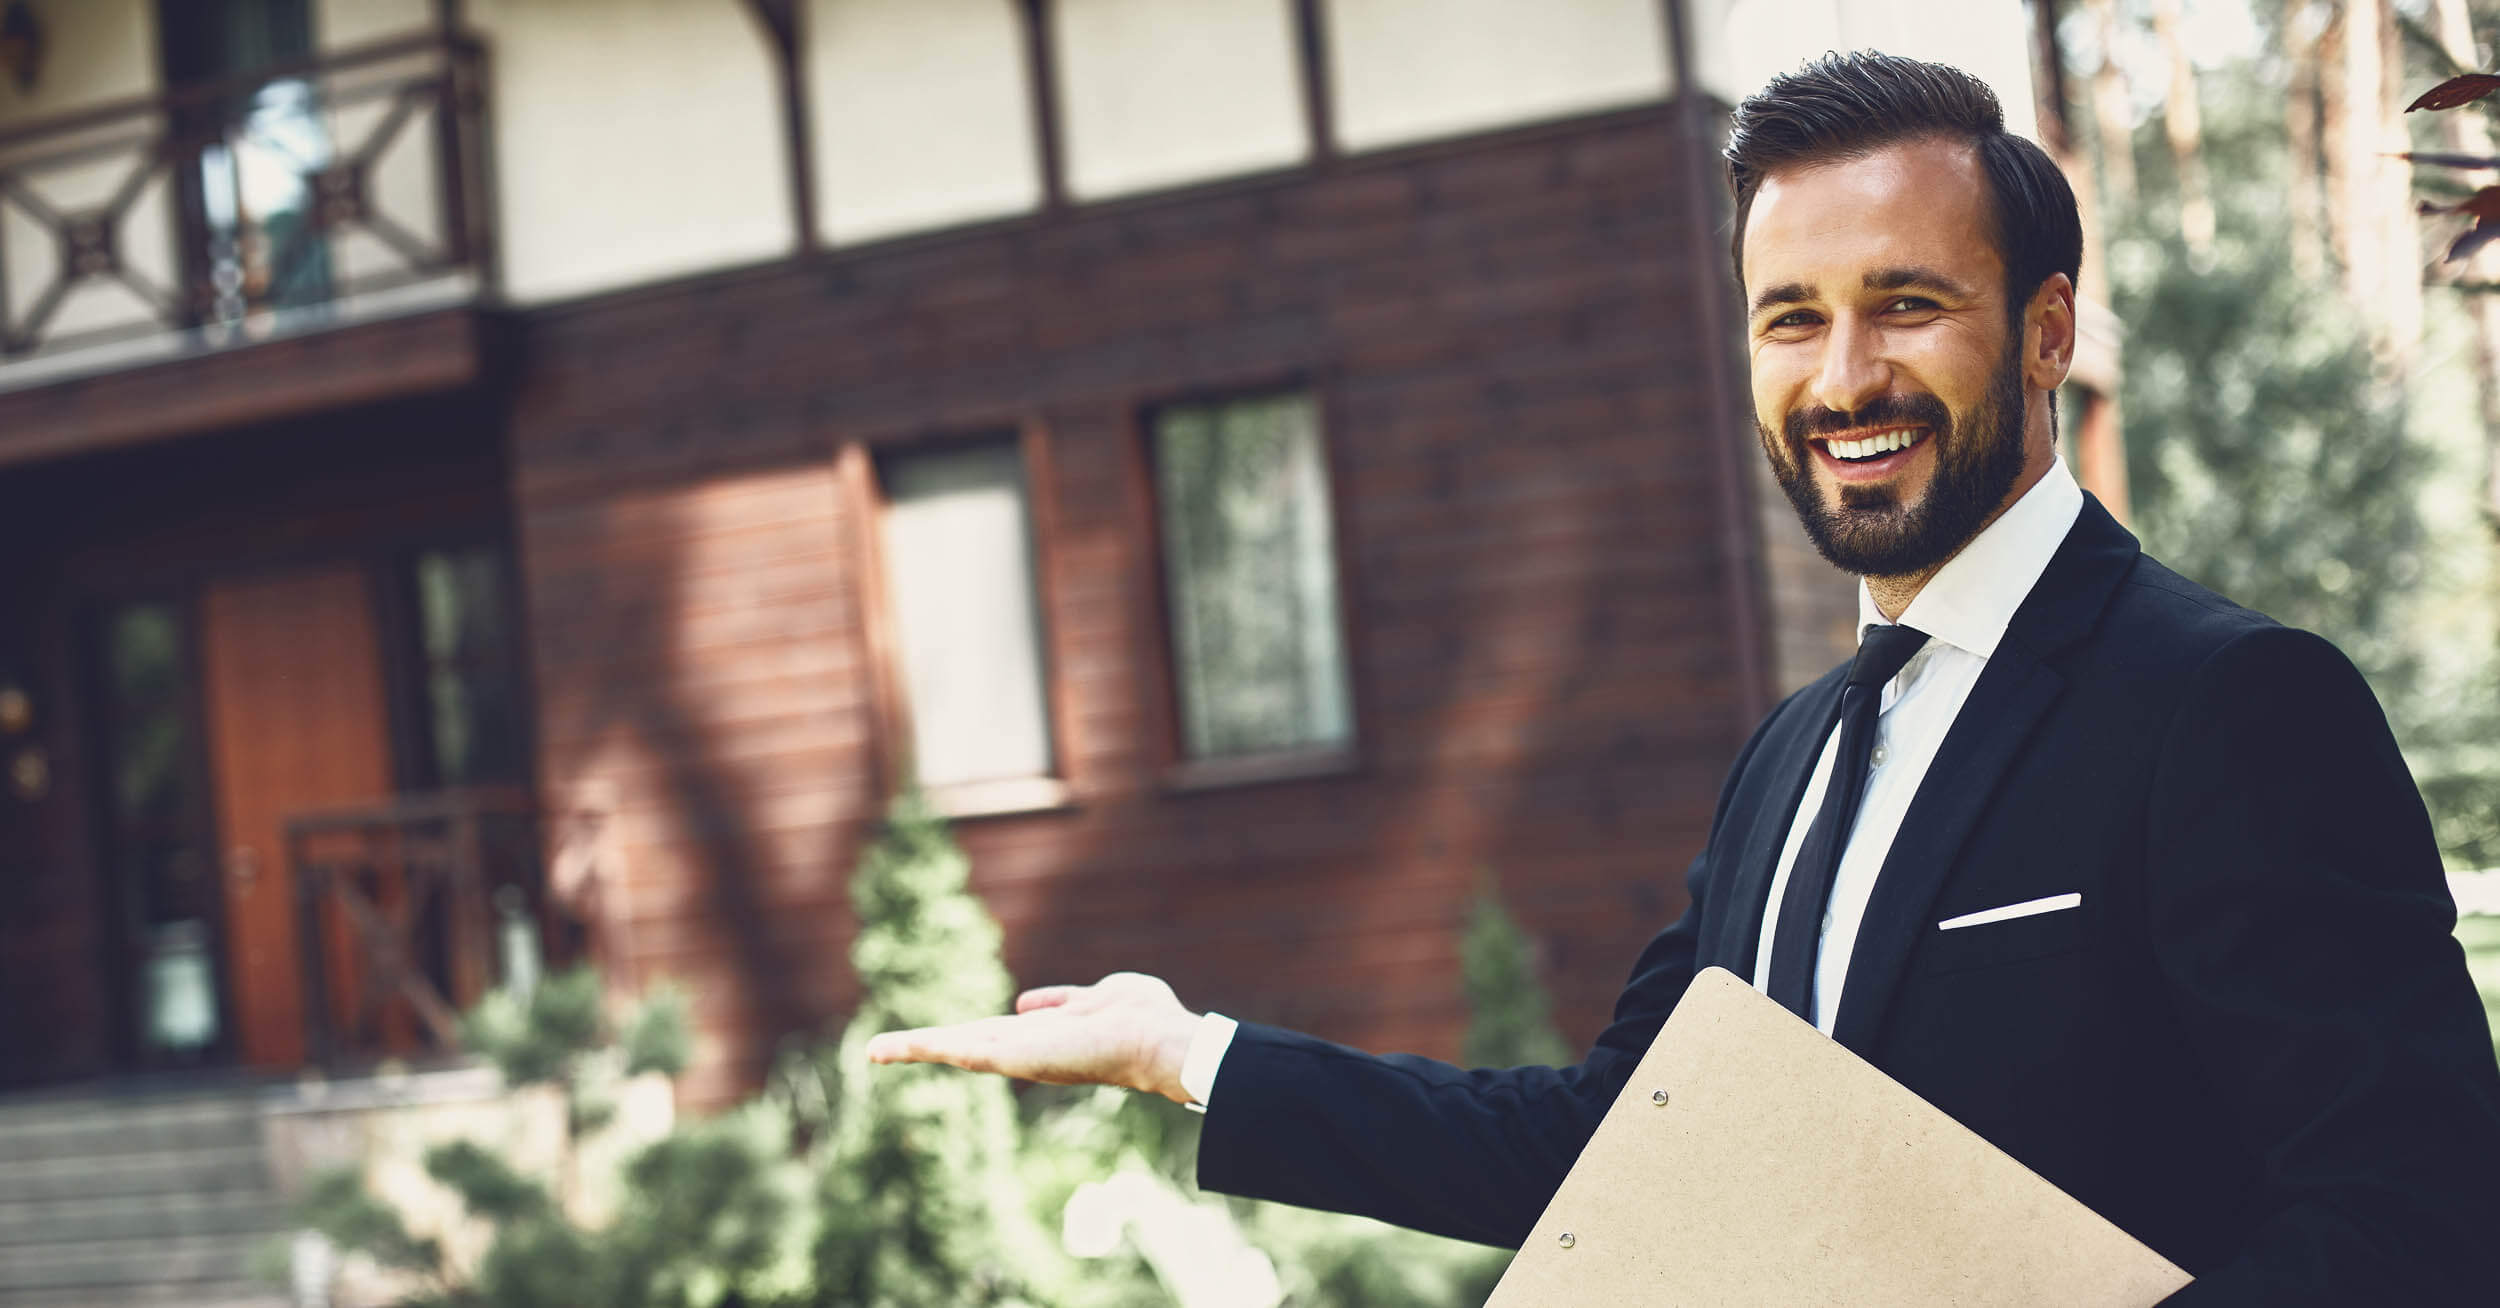 Avantages inconvénients agent mandataire immobilier - Agent immobilier souriant présentant dehors une maison